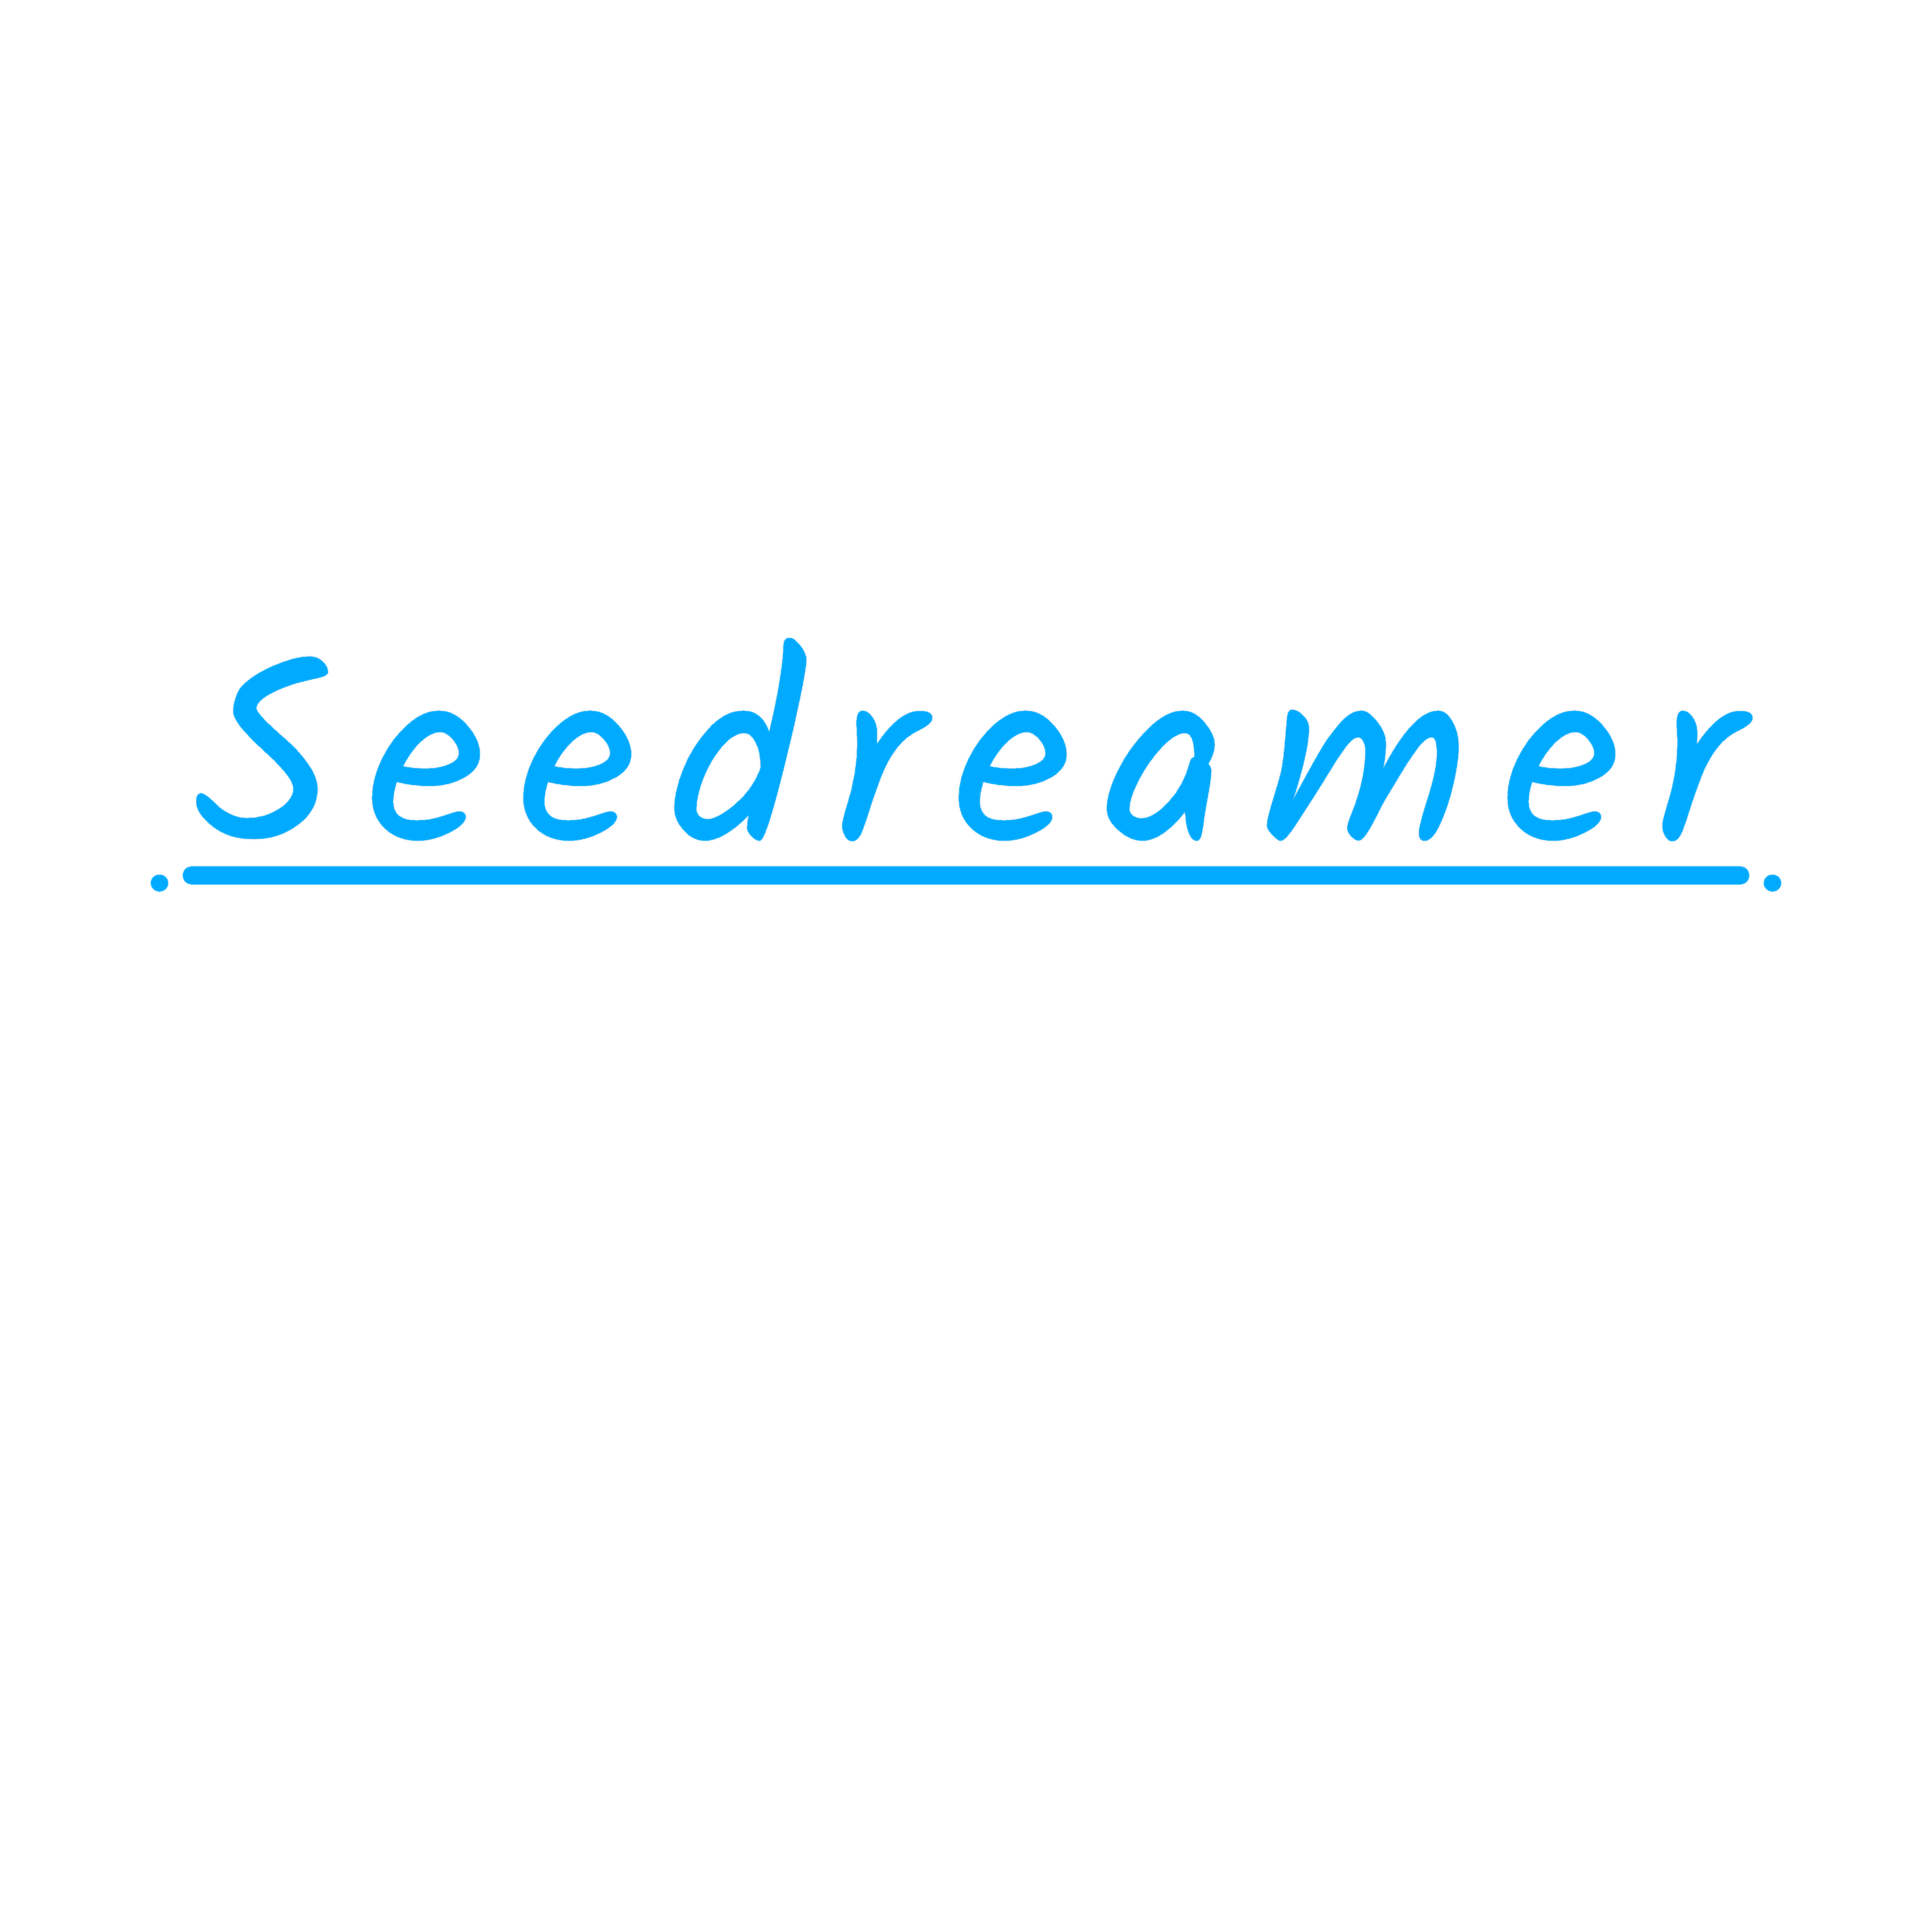 Seedreamer